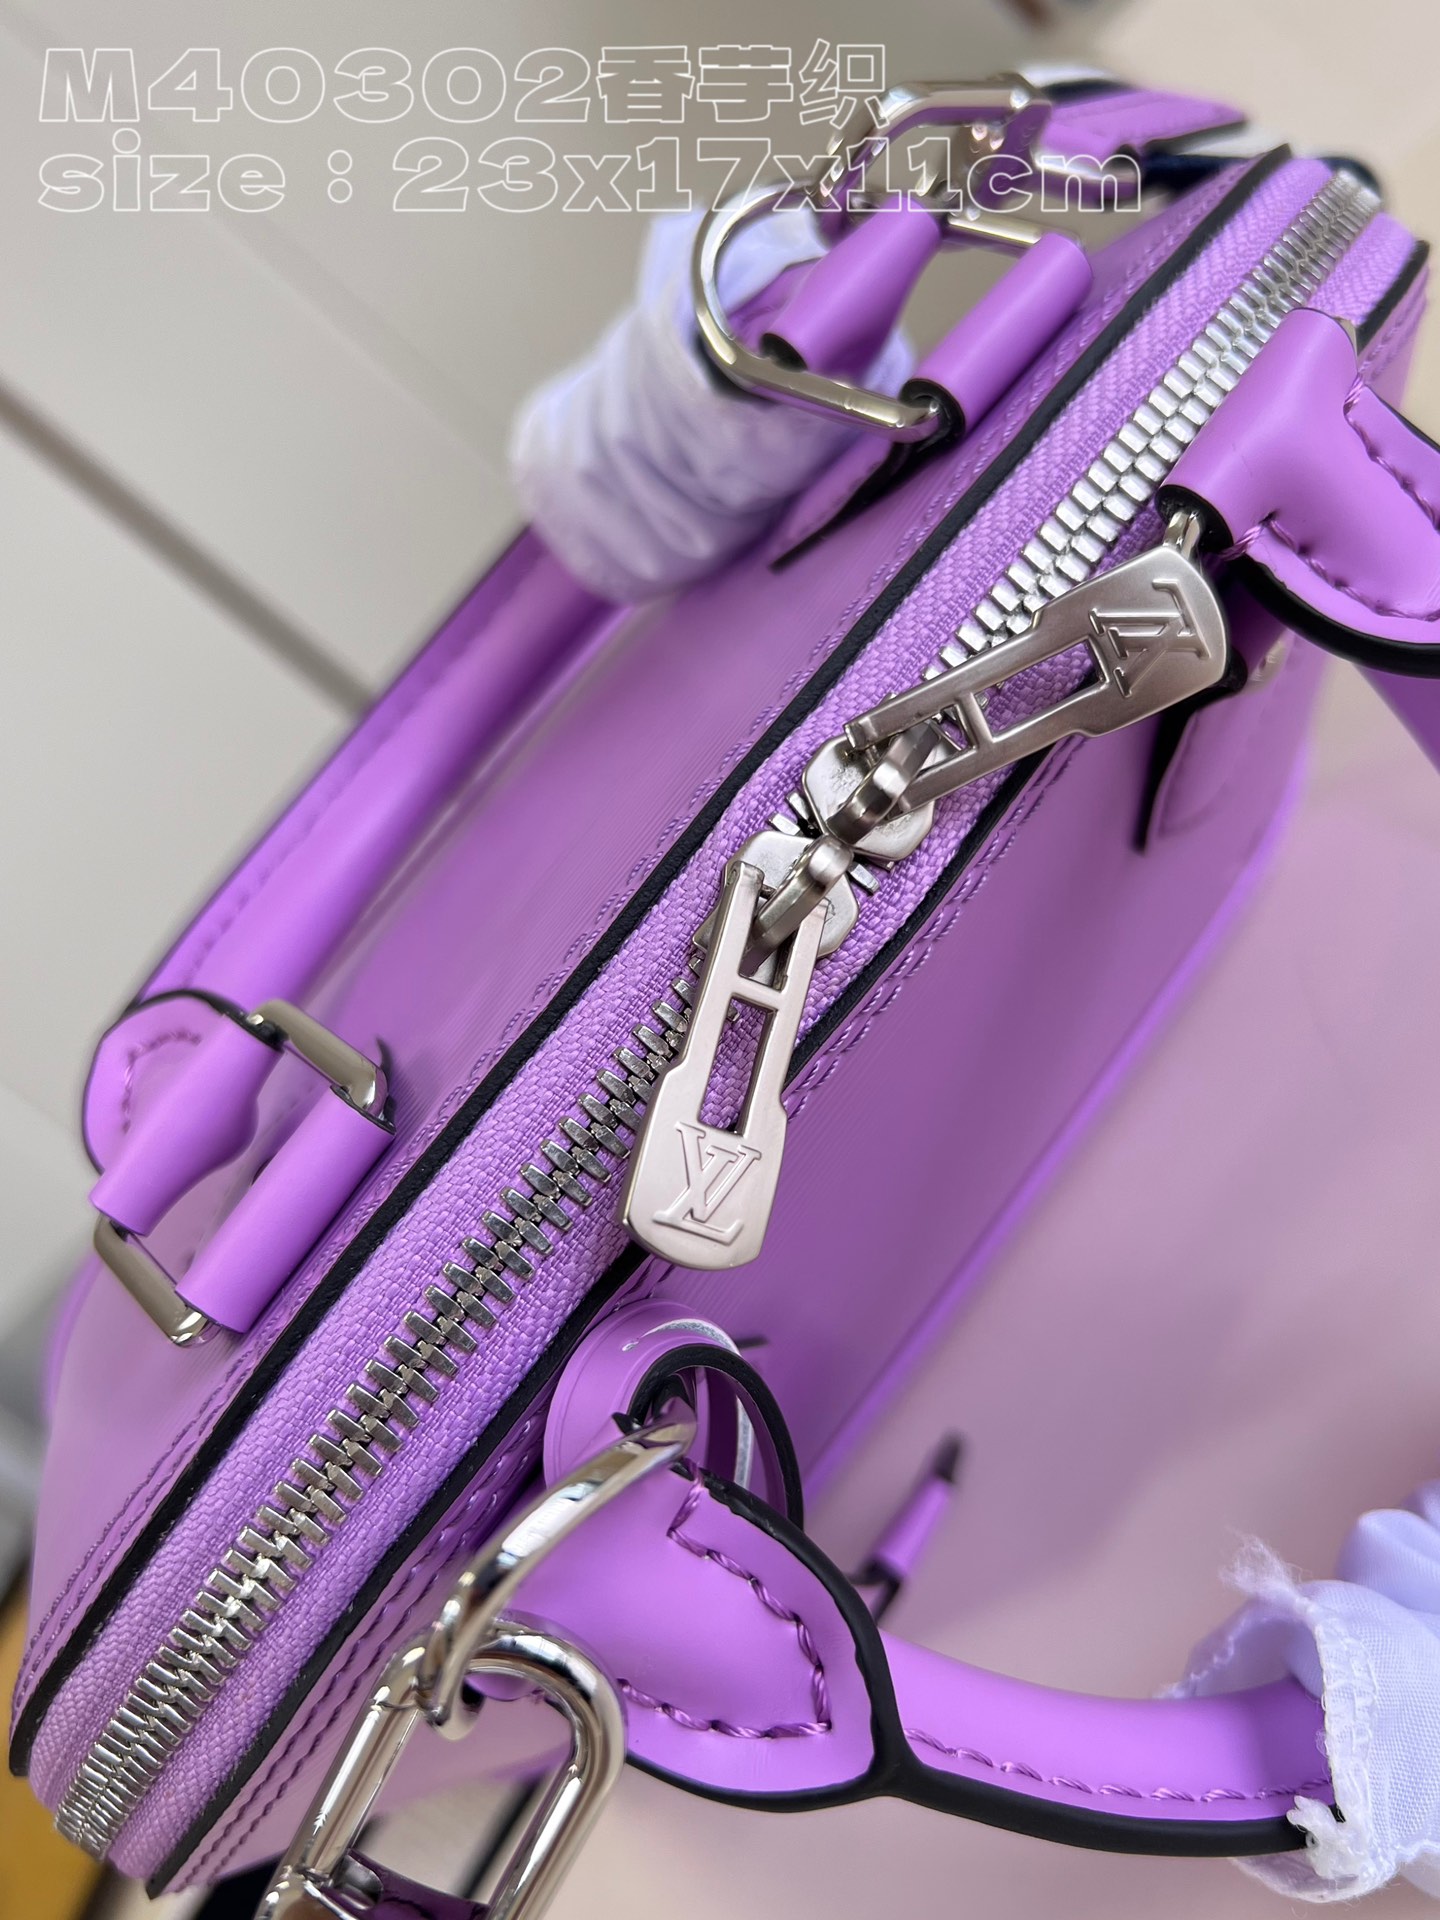 顶级原单M40302香芋紫织作为路易威登标志性的设计之一AlmaBB手袋此次取材Epi皮革将路易威登标识